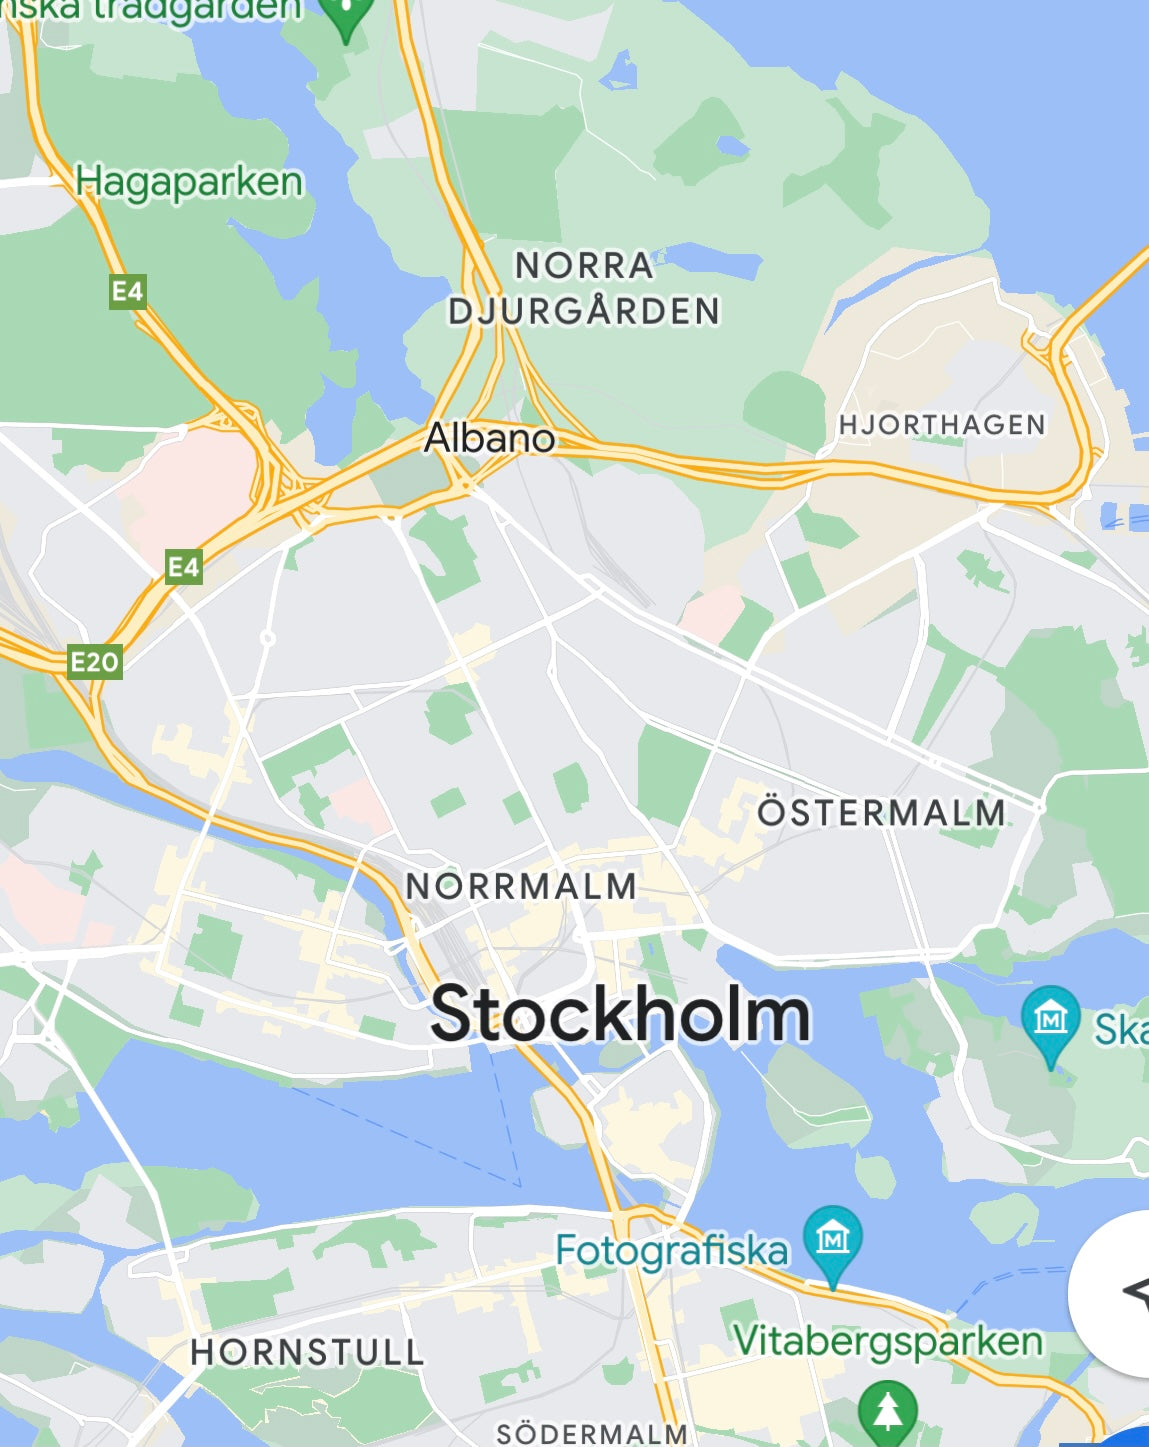 Bird's eye view of Stockholm